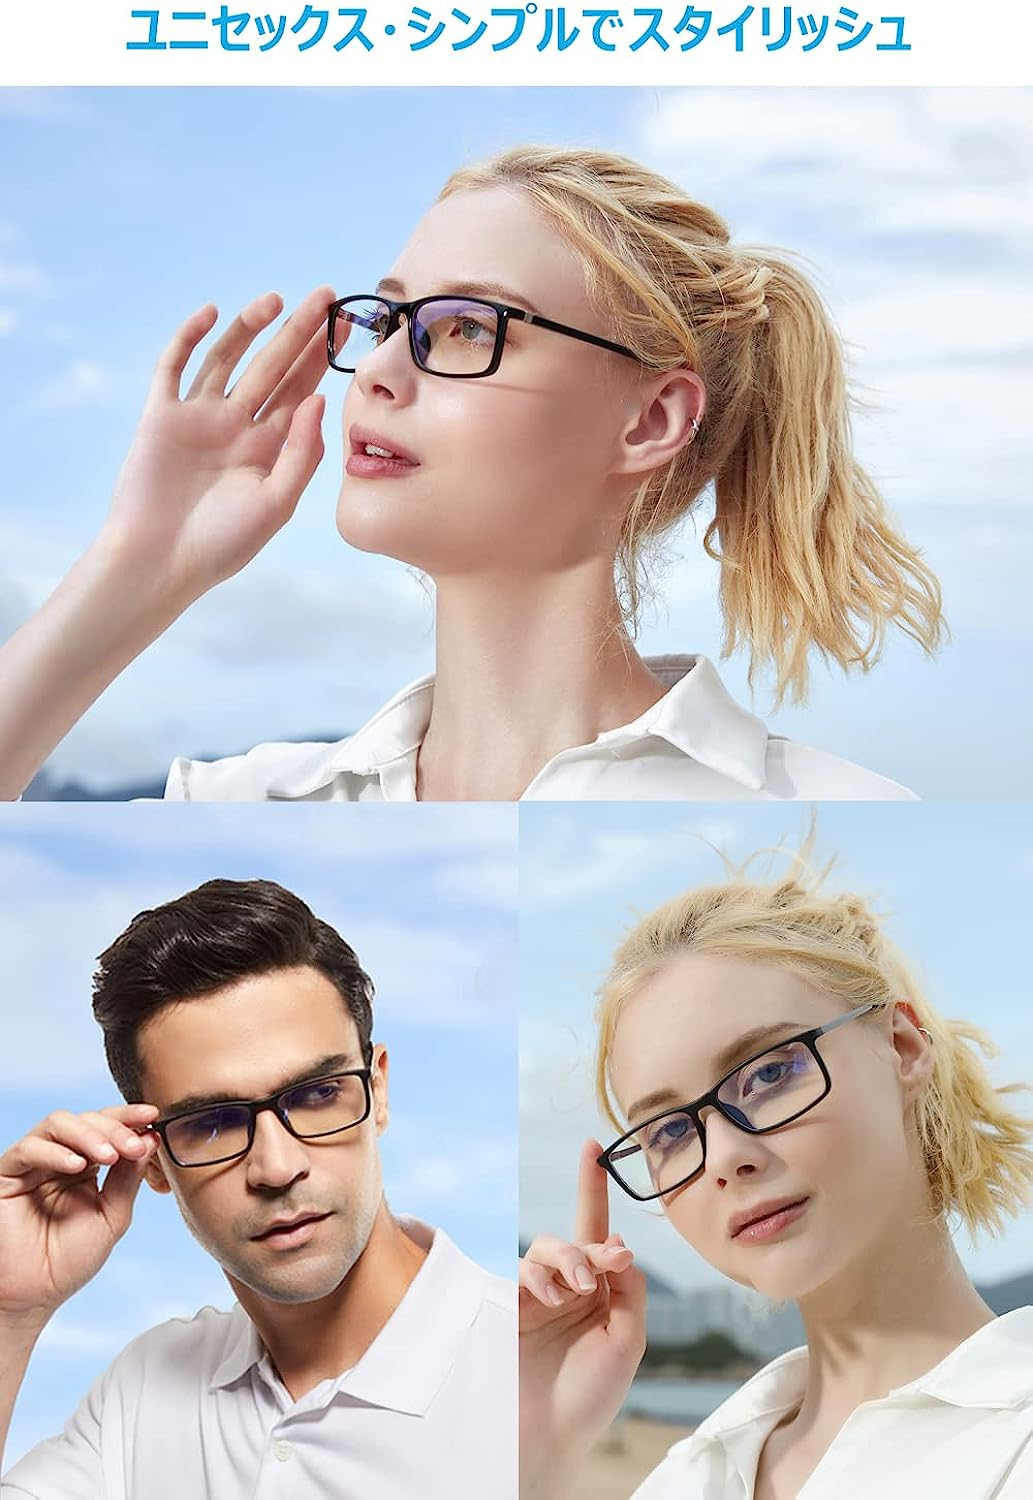 ブルーライトカット メガネ PCメガネ 軽量 UVカット 伊達眼鏡 男女兼用